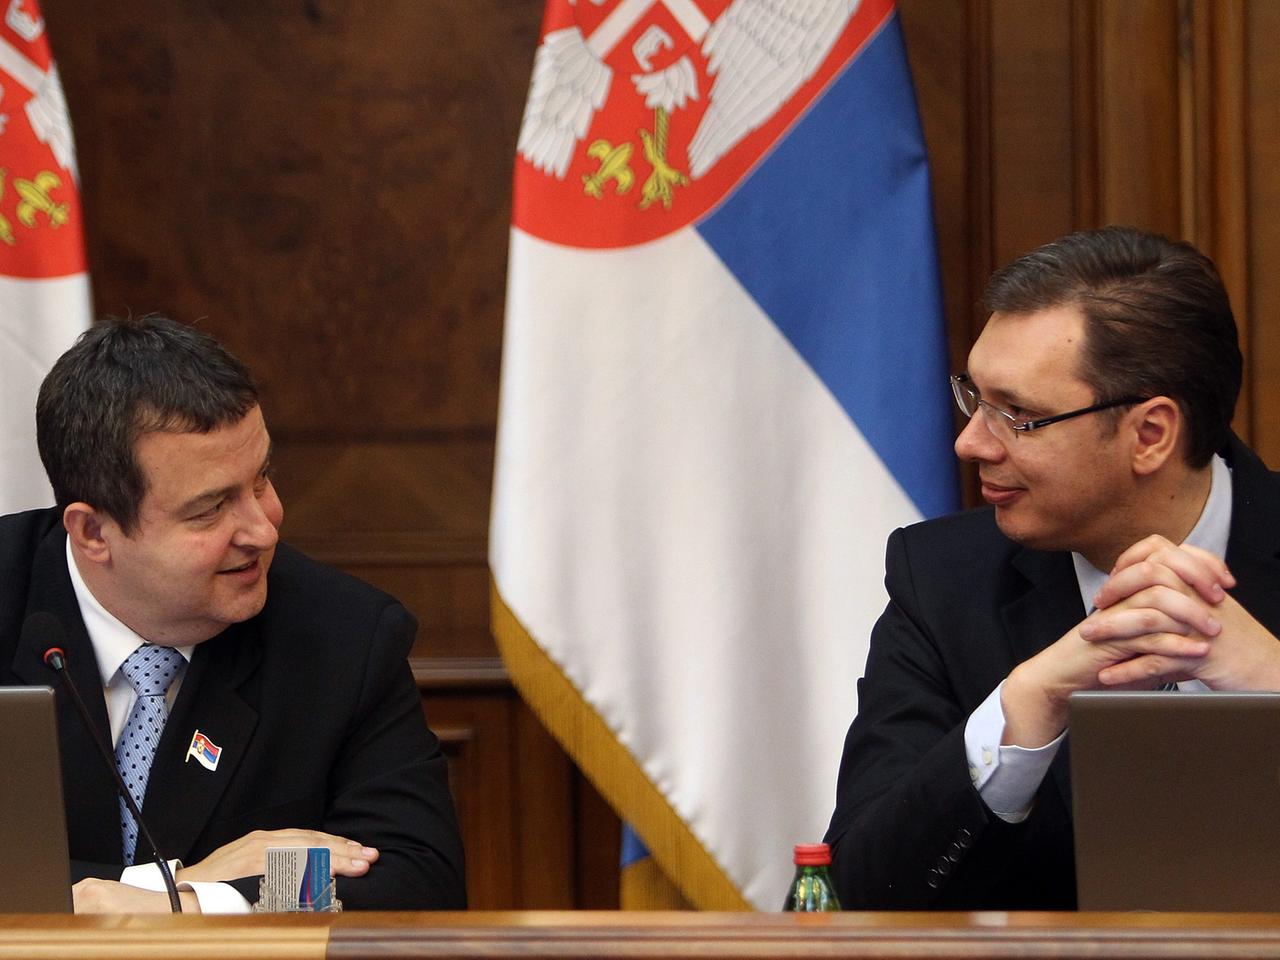 Ivica Dacic und Alexander Vucic sitzen an einem Tisch vor Laptops und unterhalten sich. Im Hintergrund vor einer branuen Holzwand hängen zwei serbische Flaggen in den Farben blau-weiß-rot.